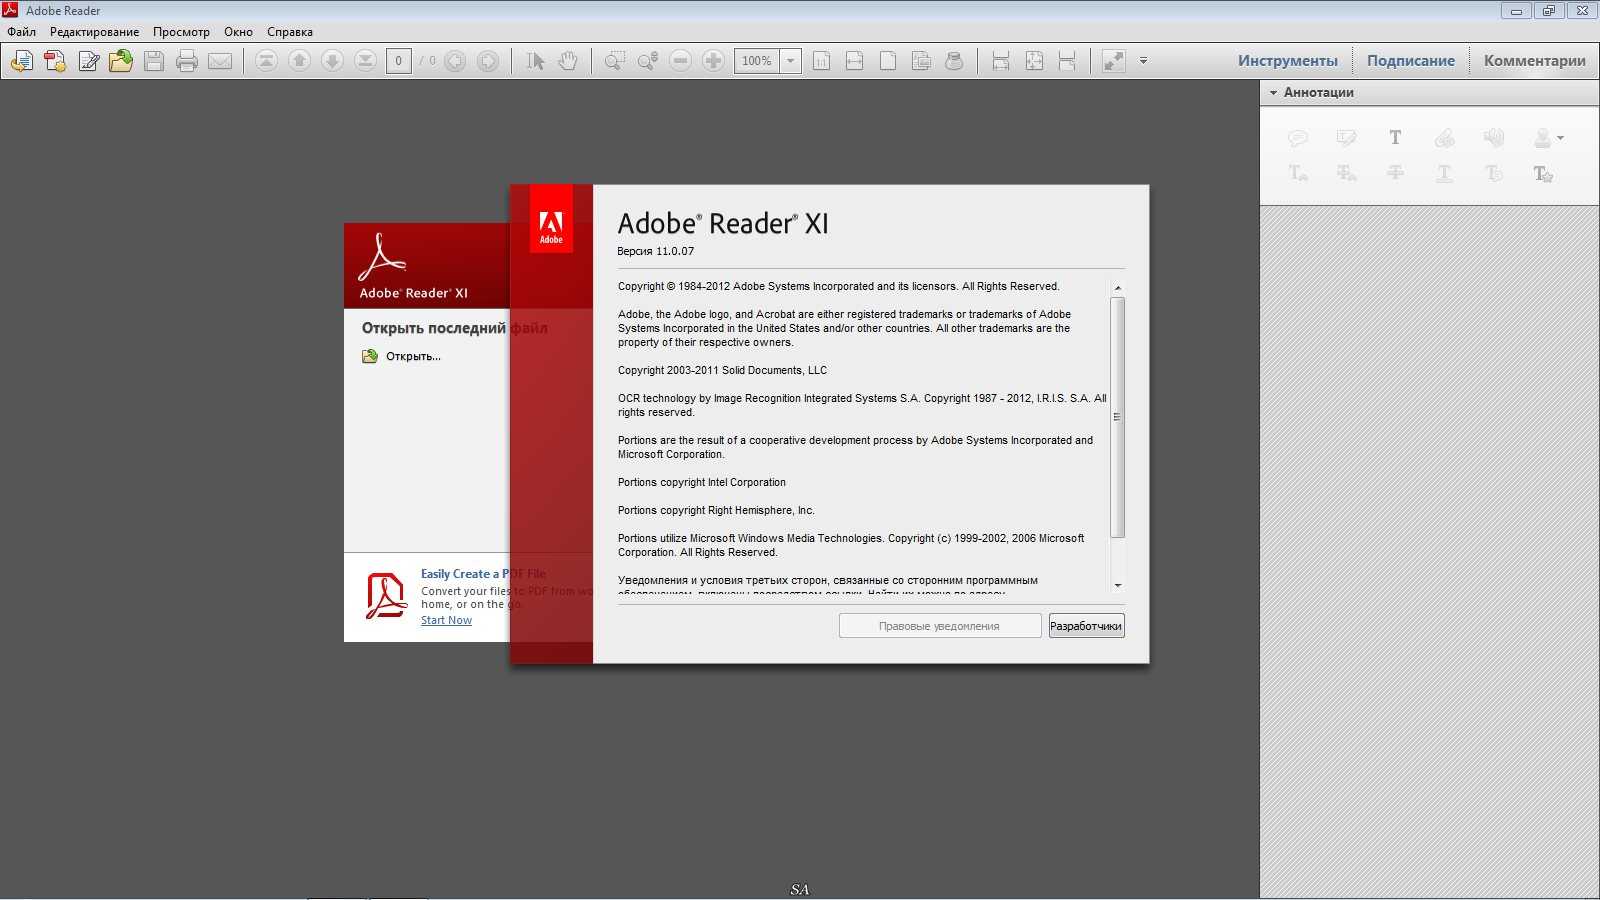 Установит на компьютер программу пдф. Акробат ридер 11 Интерфейс. Программное обеспечение Adobe Reader. Adobe Reader Интерфейс. Адоб пдф.